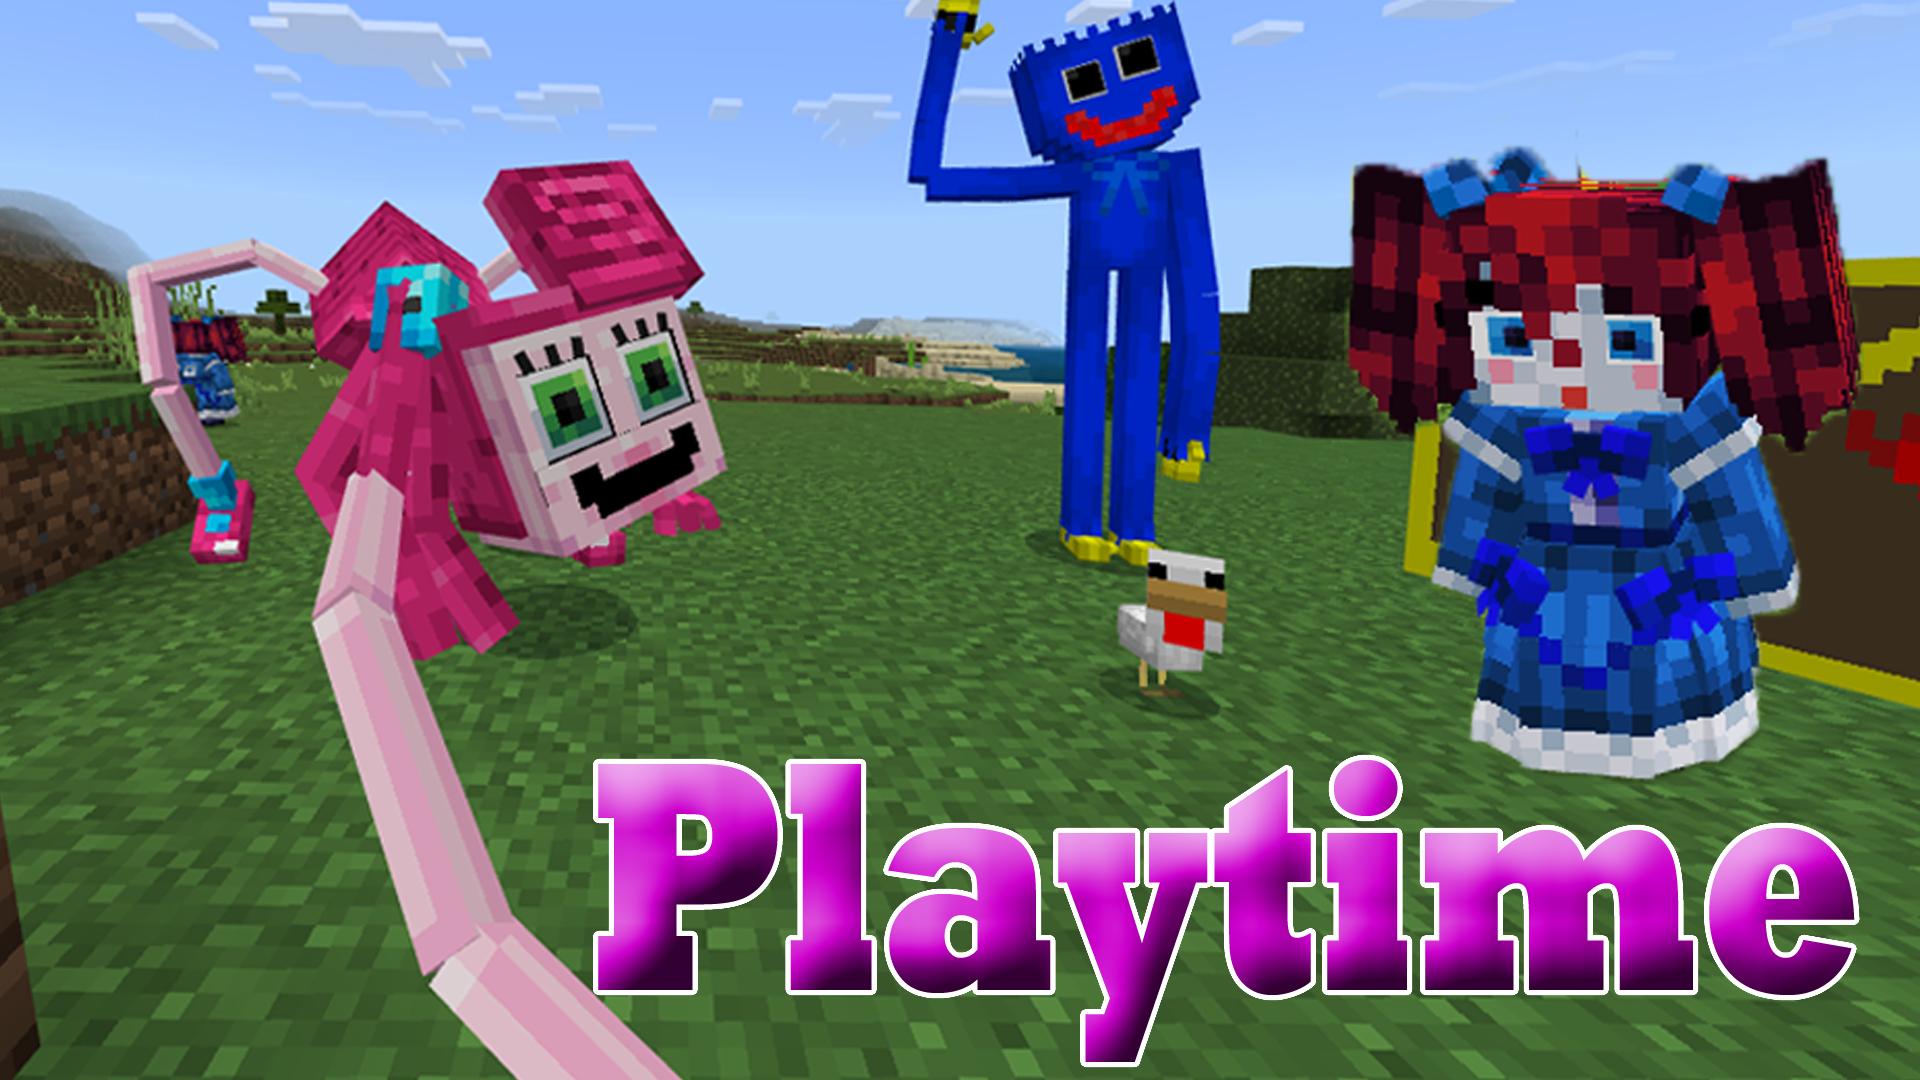 Мод для майнкрафта poppy playtime 2. Poppy Minecraft. Майнкрафт скин Poppy Playtime 3. Человечек из Poppy Playtime в Minecraft. Poppy Playtime Mod Minecraft pe by Bbendy.